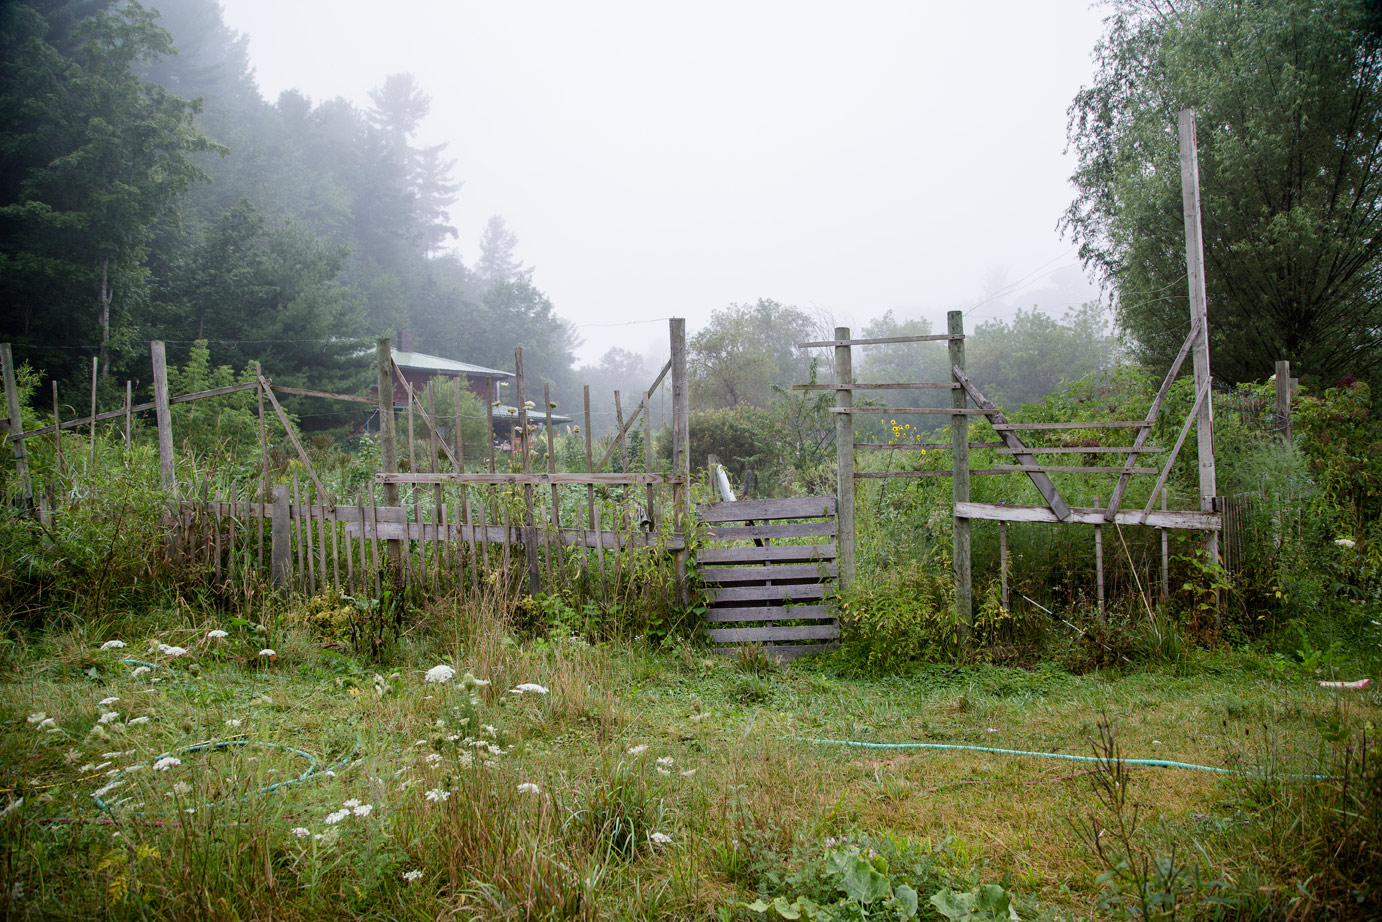 Sara Stathas farm photographer - a farm field on a foggy morning